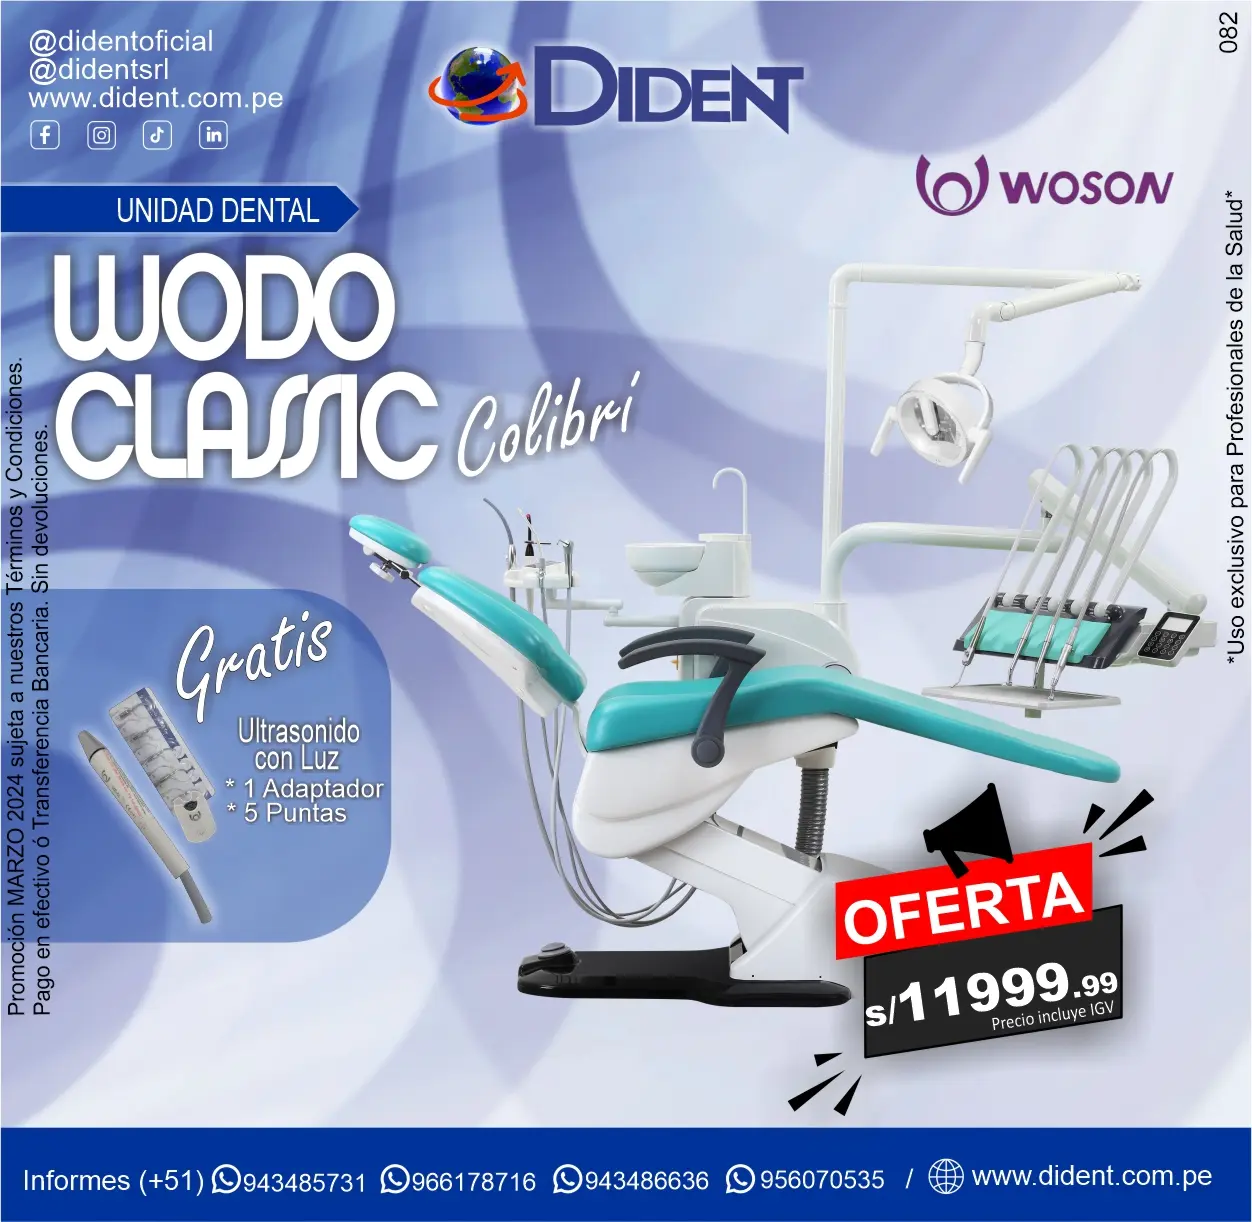 Unidad Dental Wodo Classic Colibrí Woson + Gratis Ultrasonido con luz + 1 Adaptador +5 Puntas